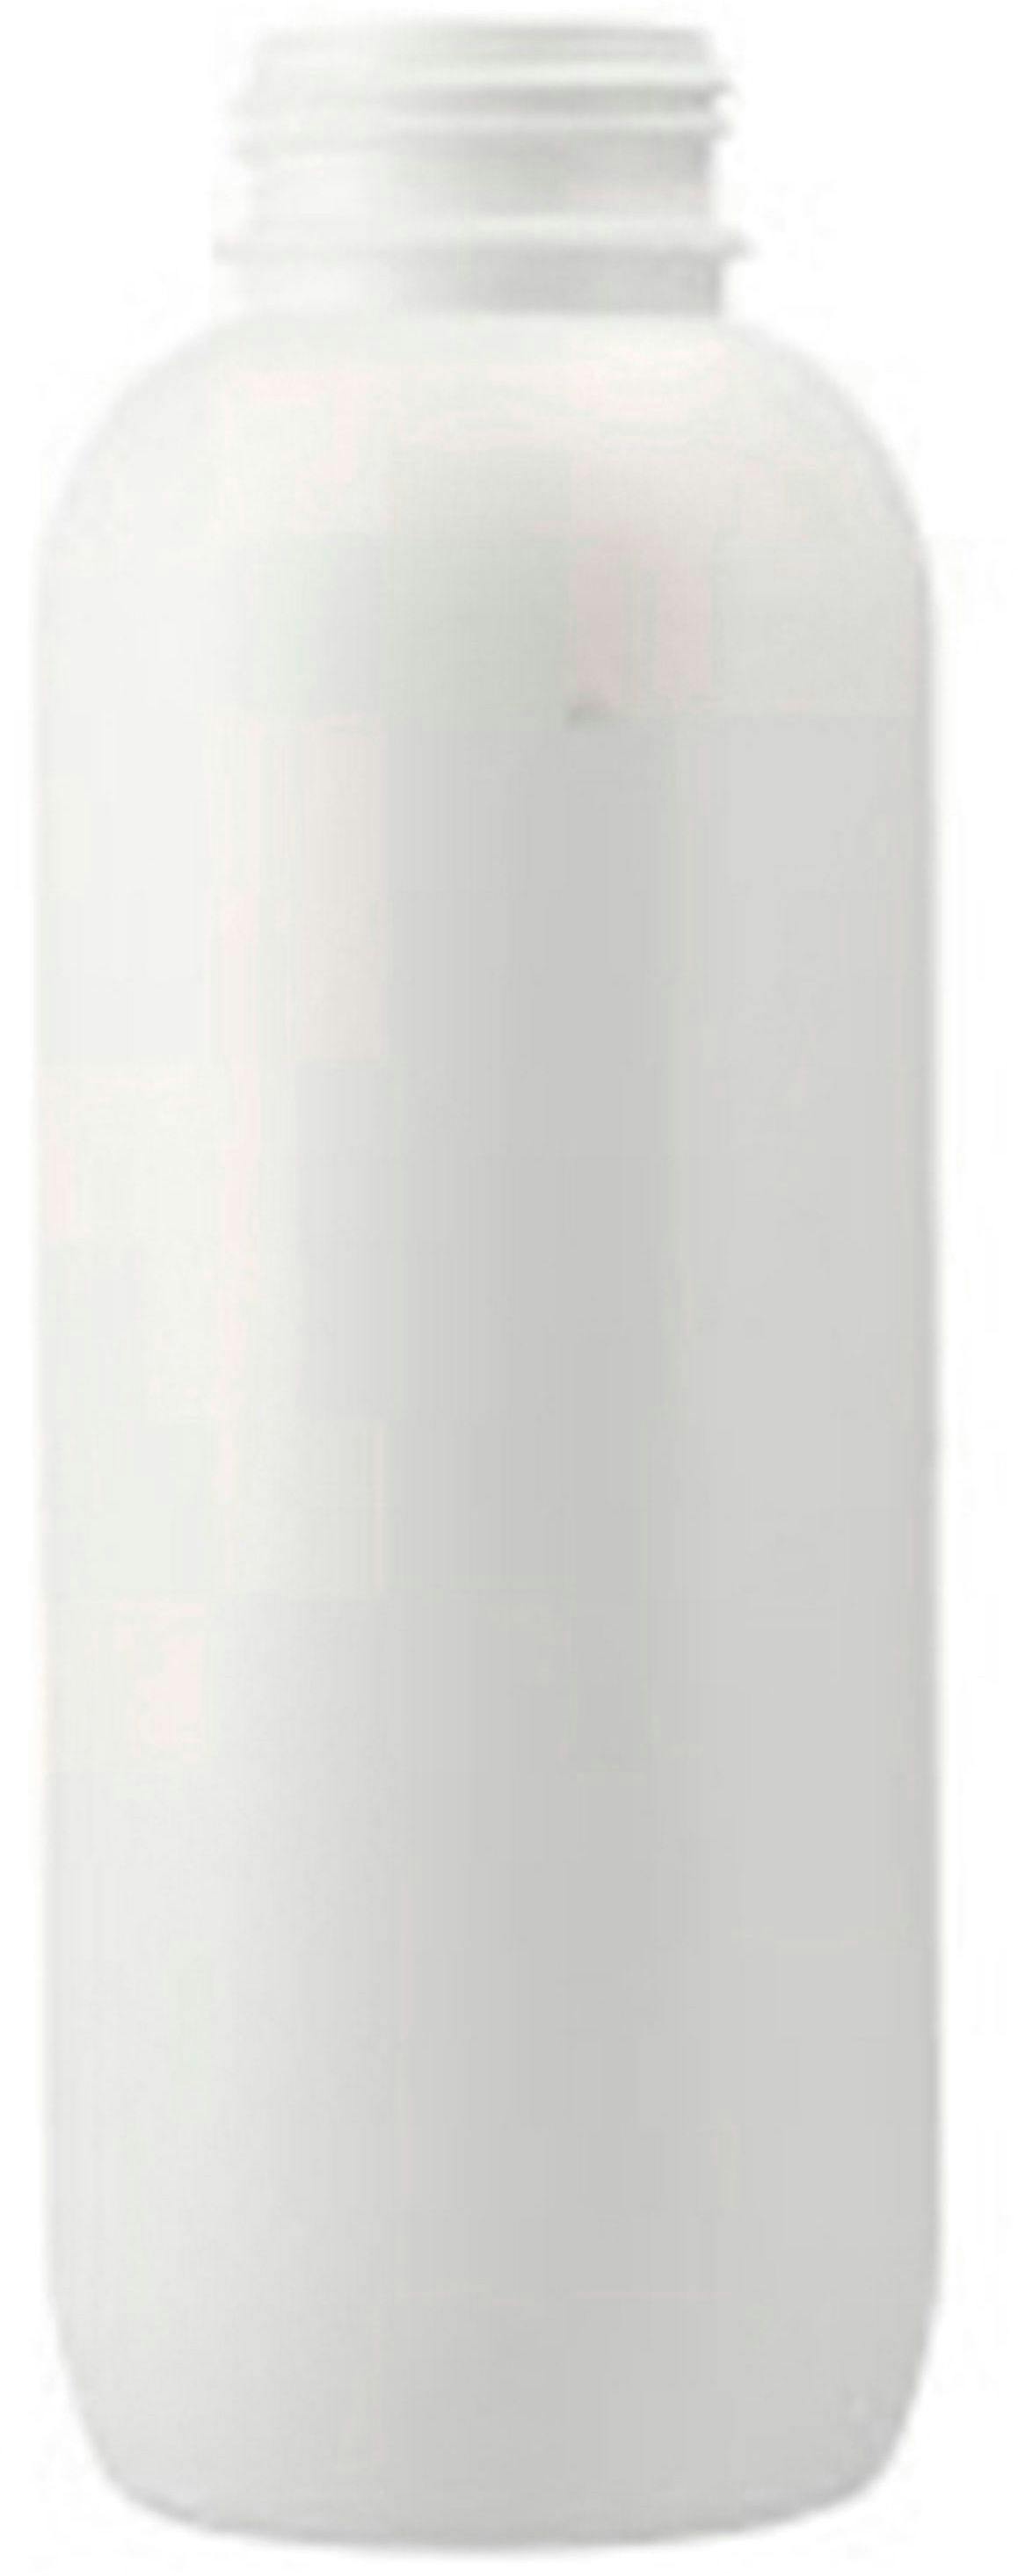 Μπουκάλι HDPE 1 λίτρου λευκό εγκεκριμένο BSK50 Snap D50